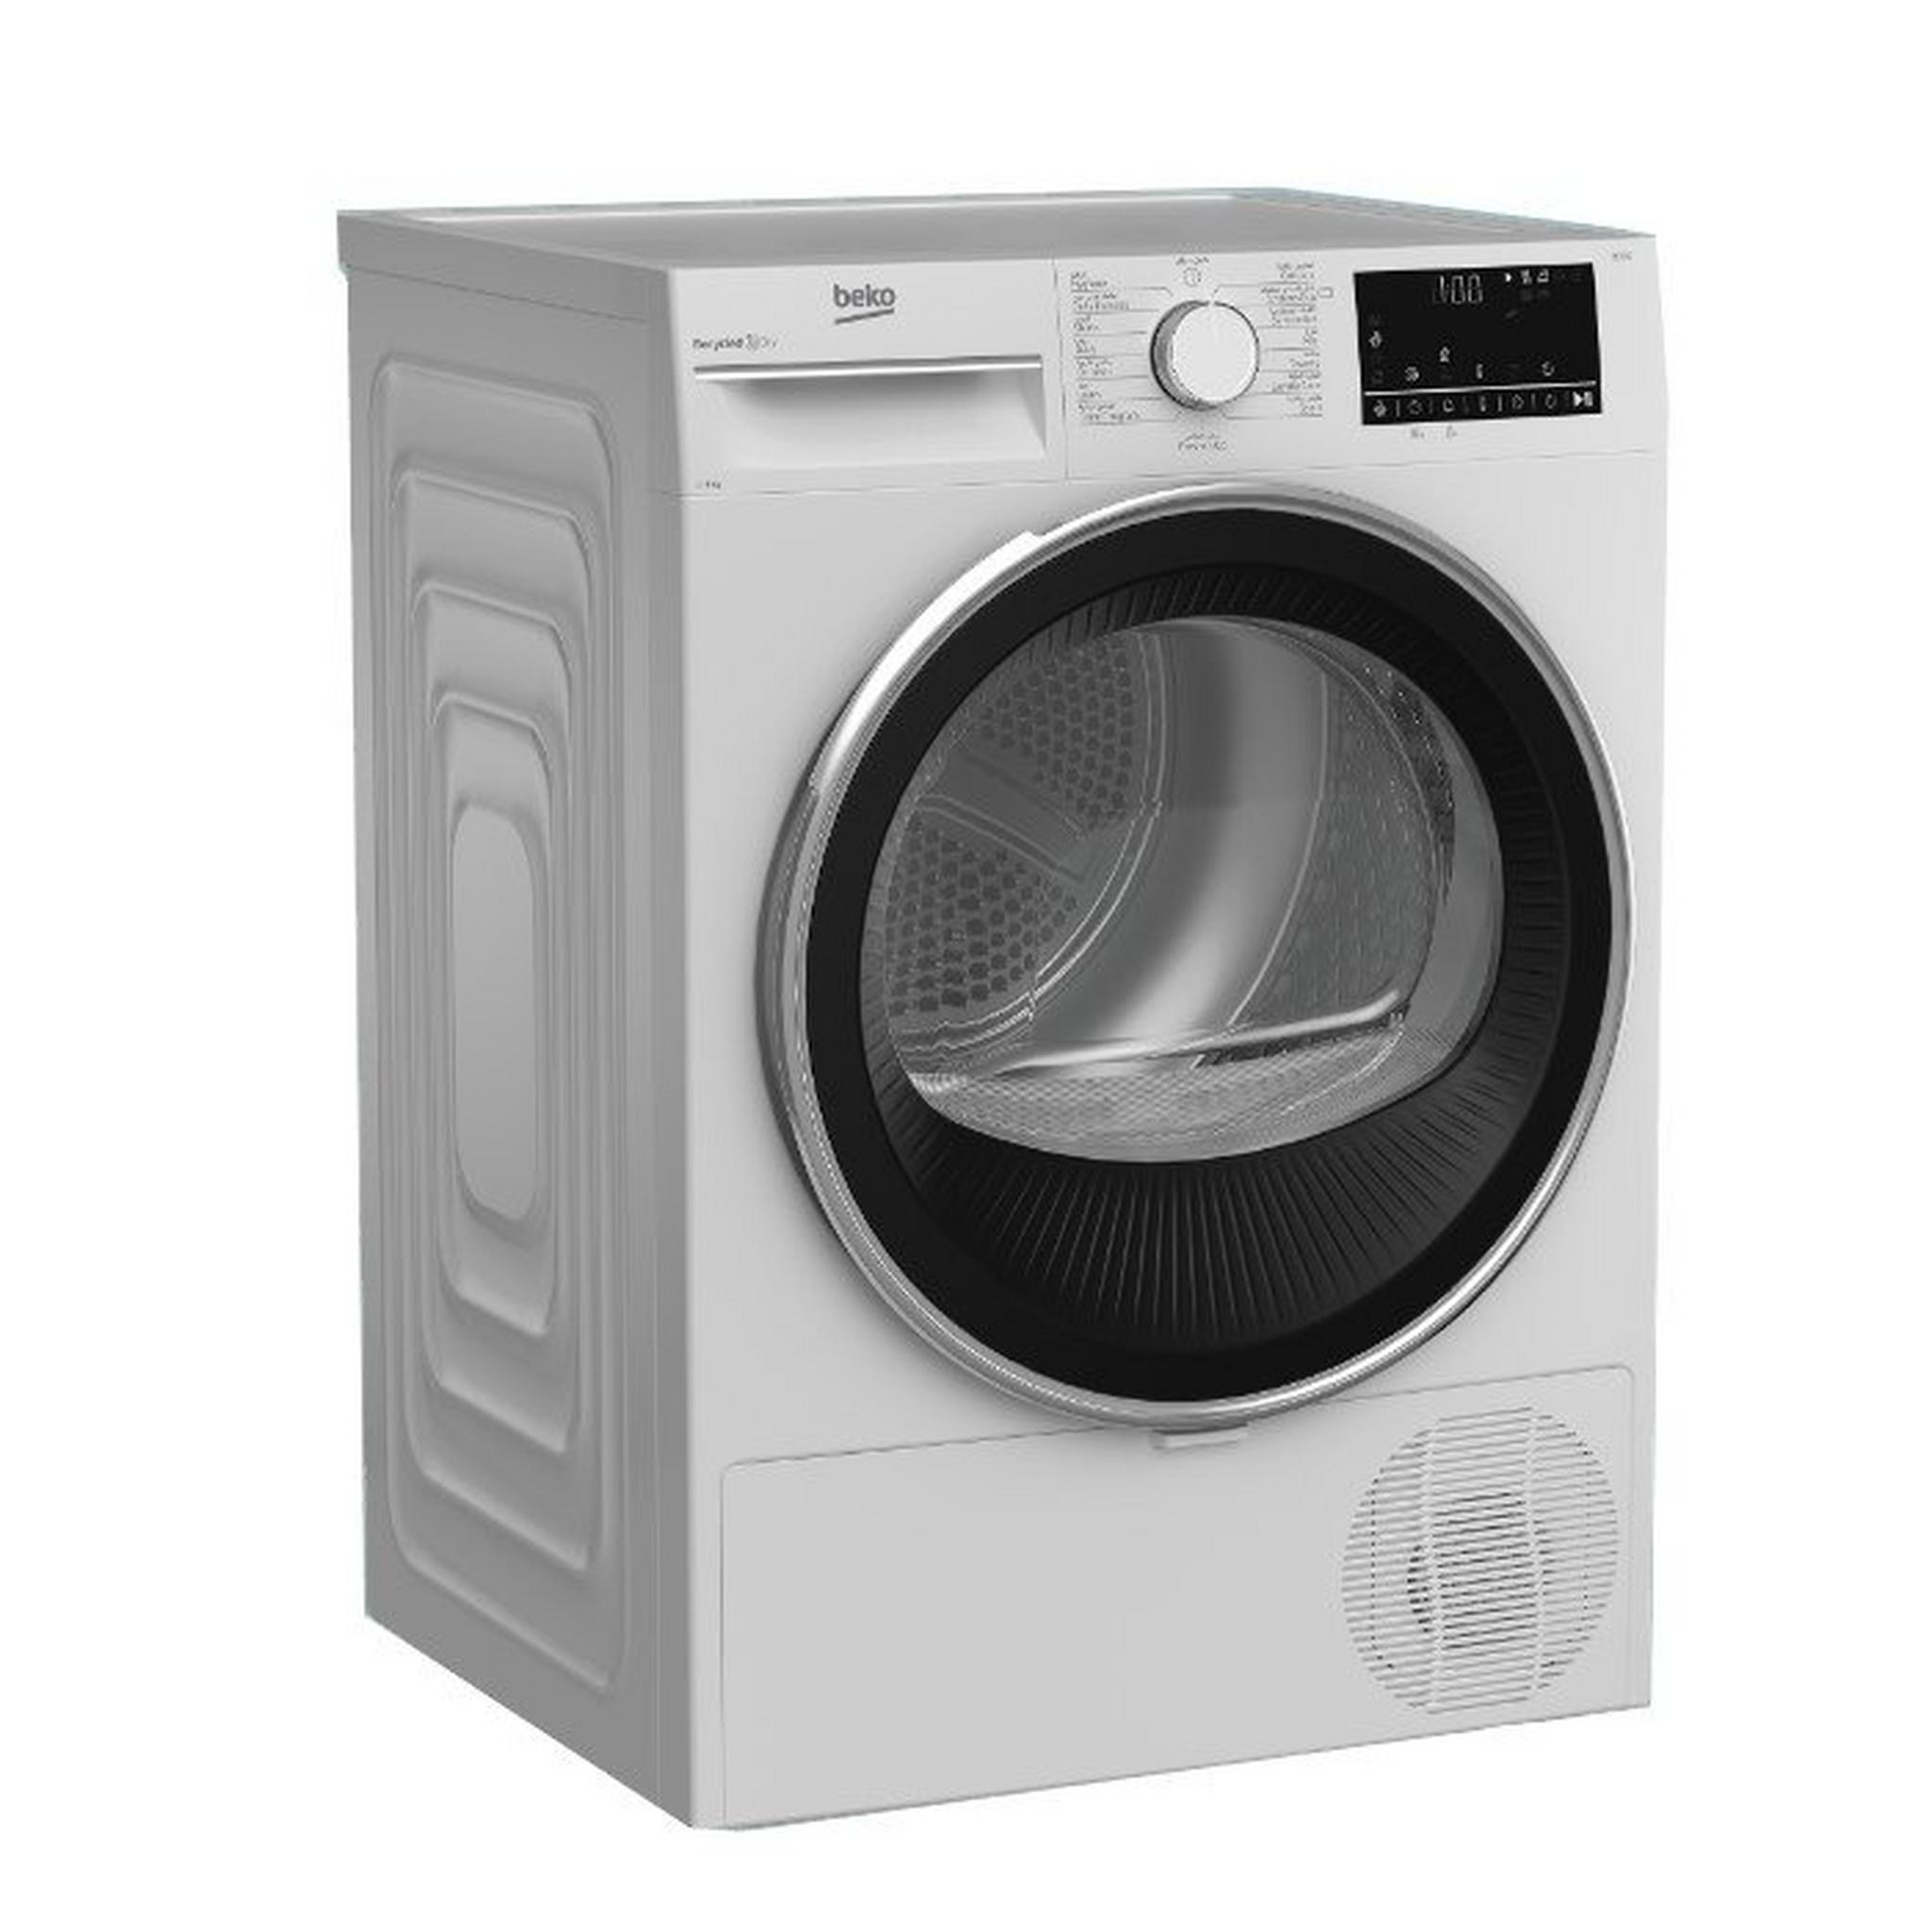 BEKO Front Load Condenser Dryer, 9kg, DC9W - White